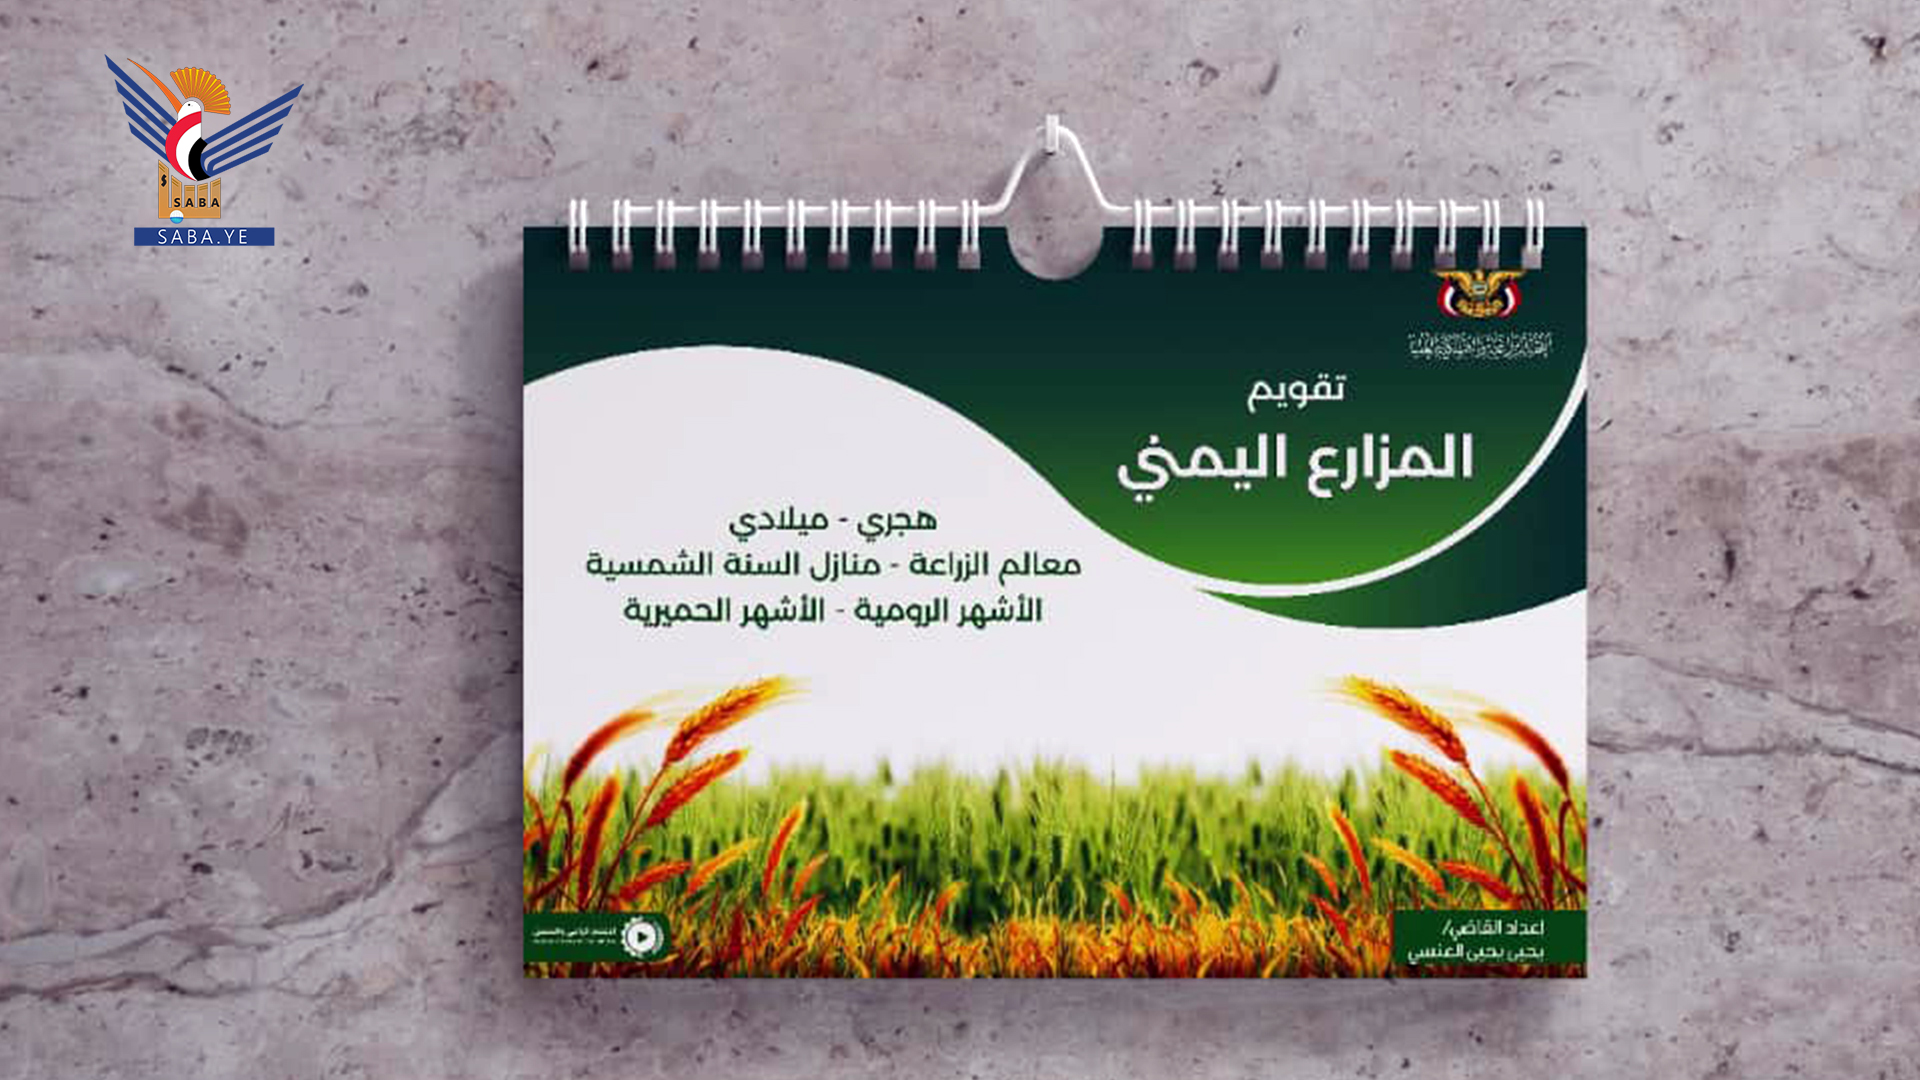 Le Comité de l'agriculture publie le calendrier agricole yéménite pour l'année en cours